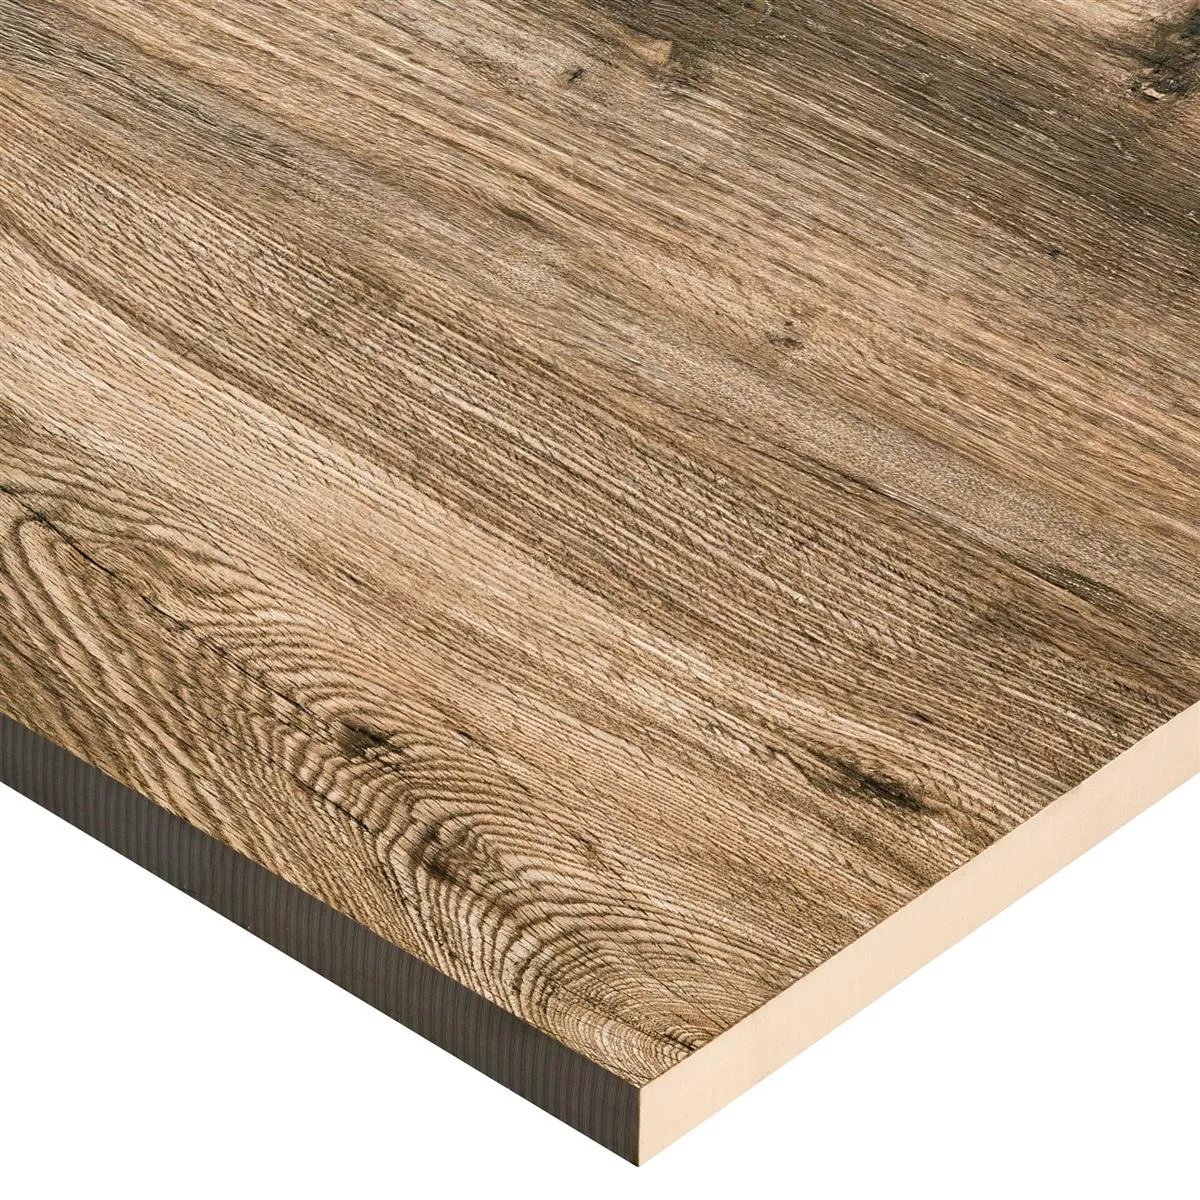 Terrace Tiles Starwood Wood Optic Oak 60x60cm